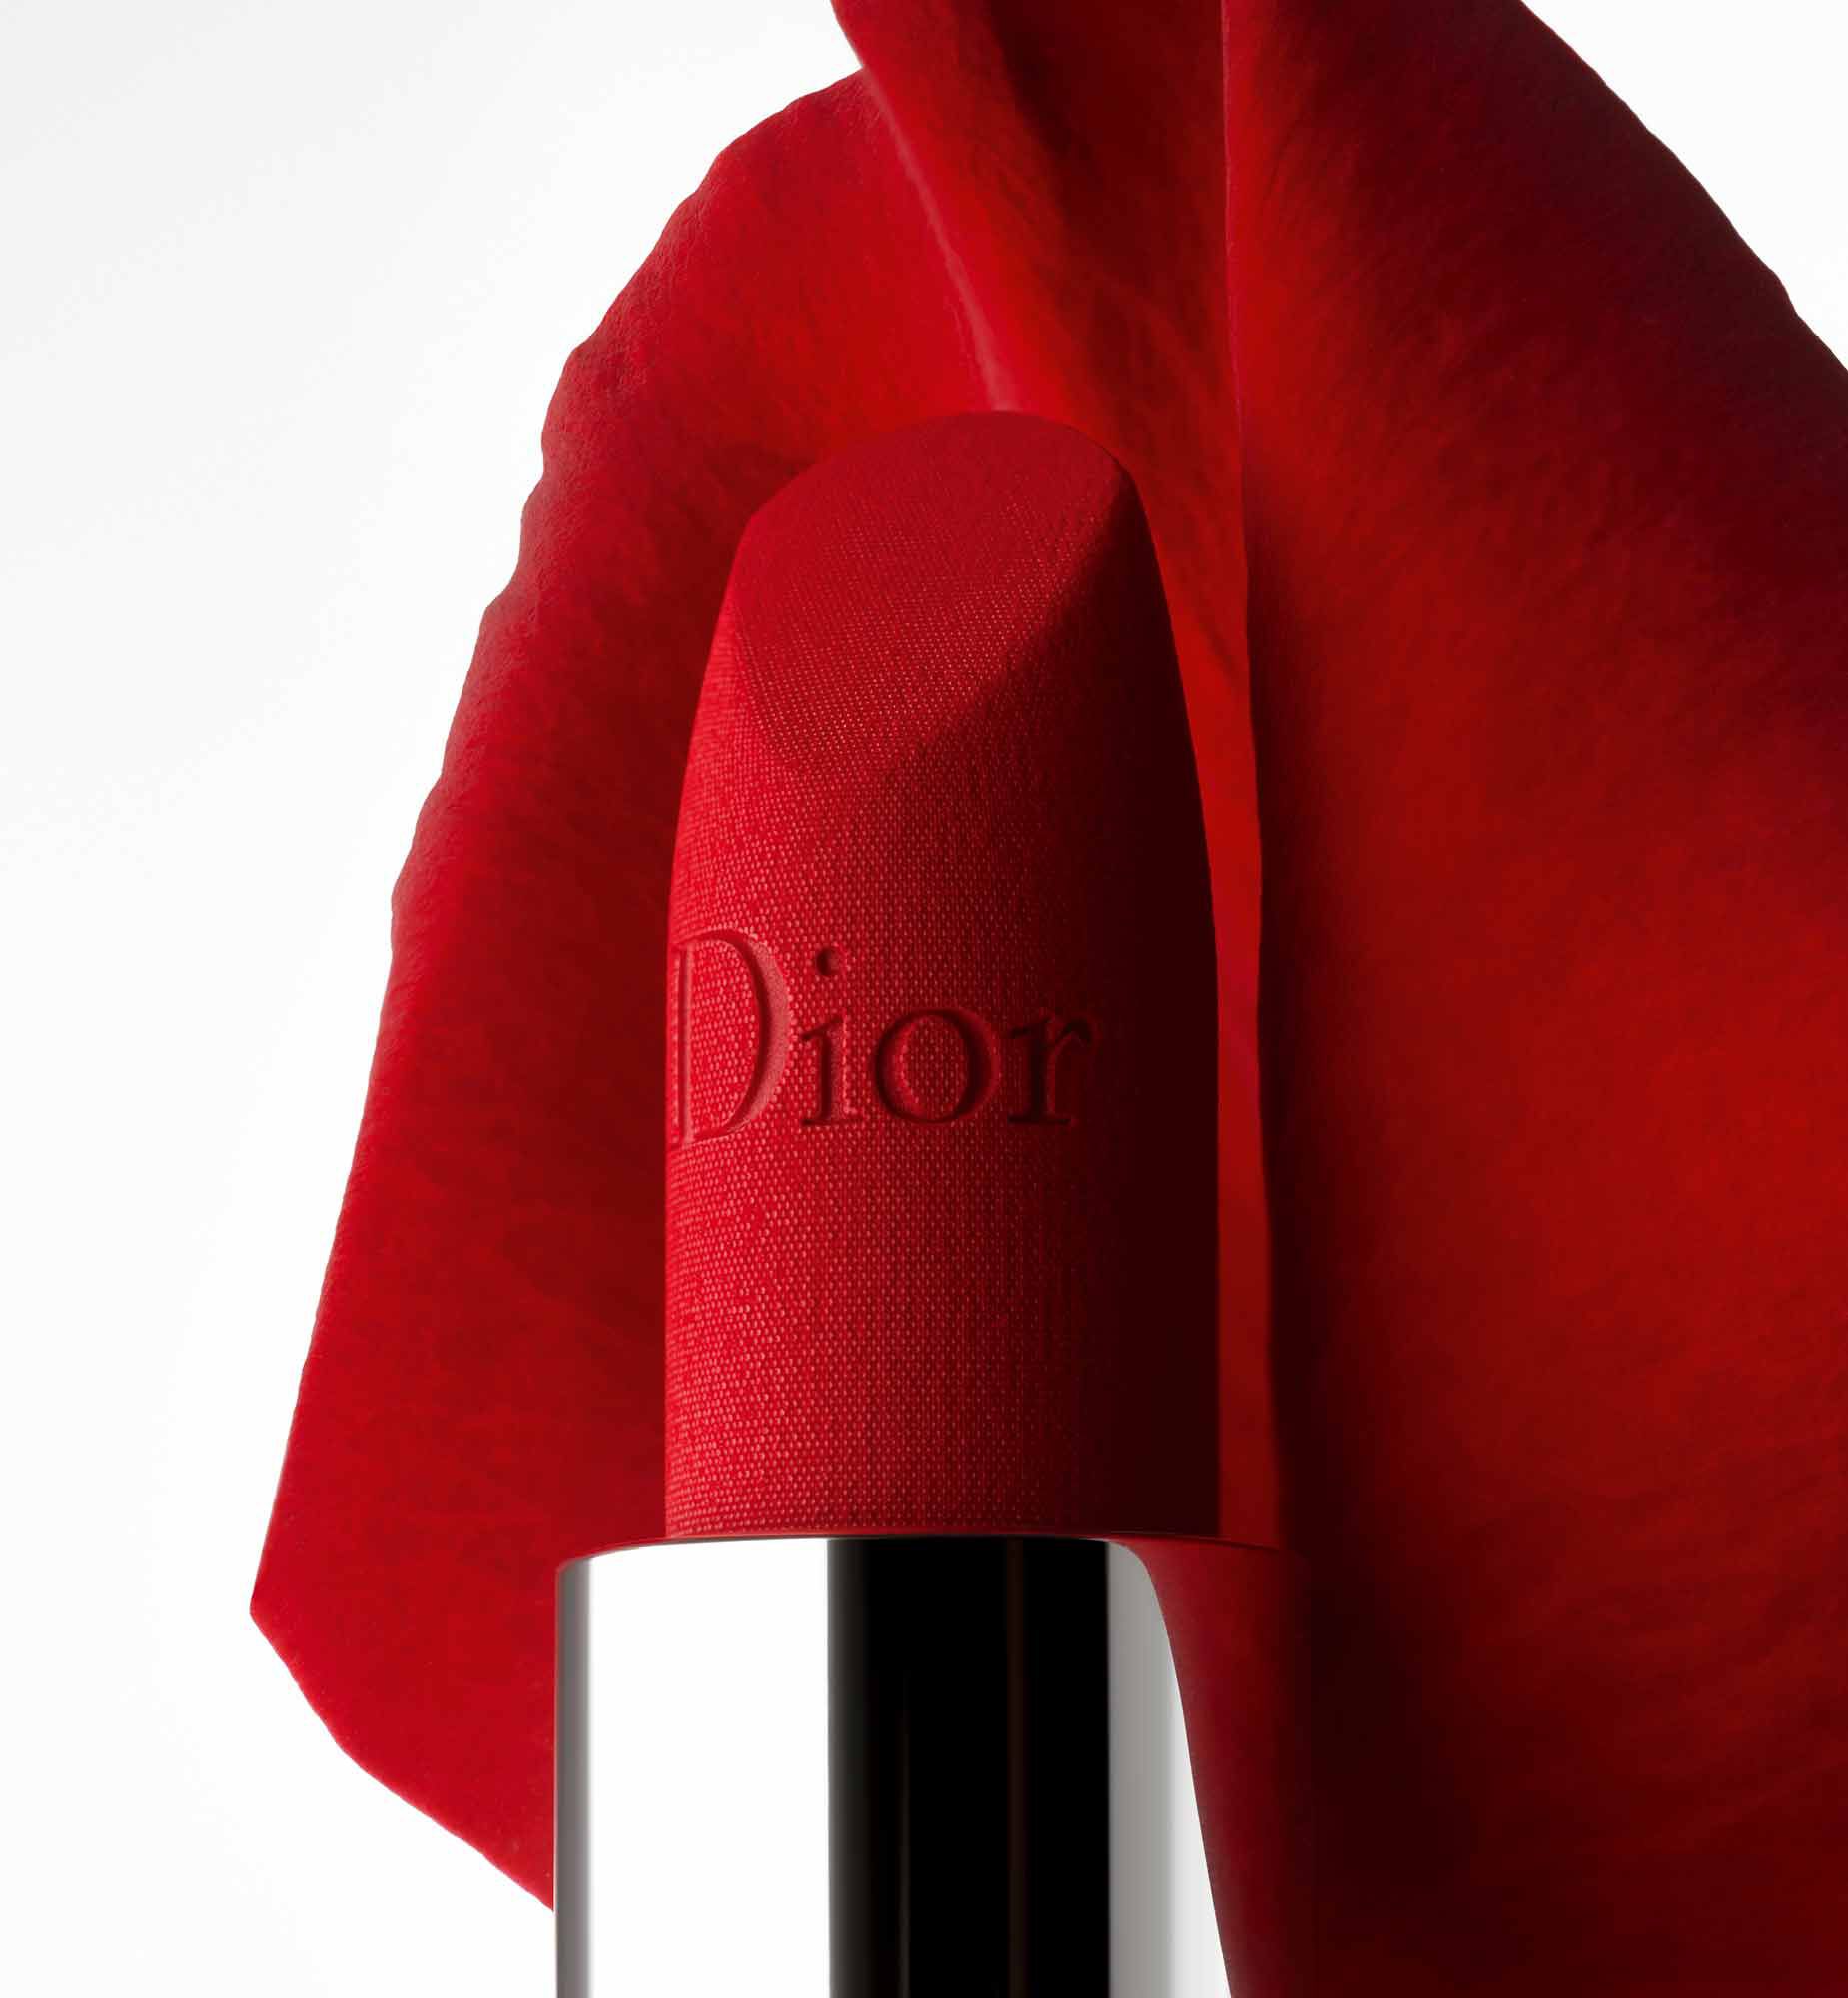 Rouge Dior Lip Duo Lipstick & Lip Balm Set | DIOR